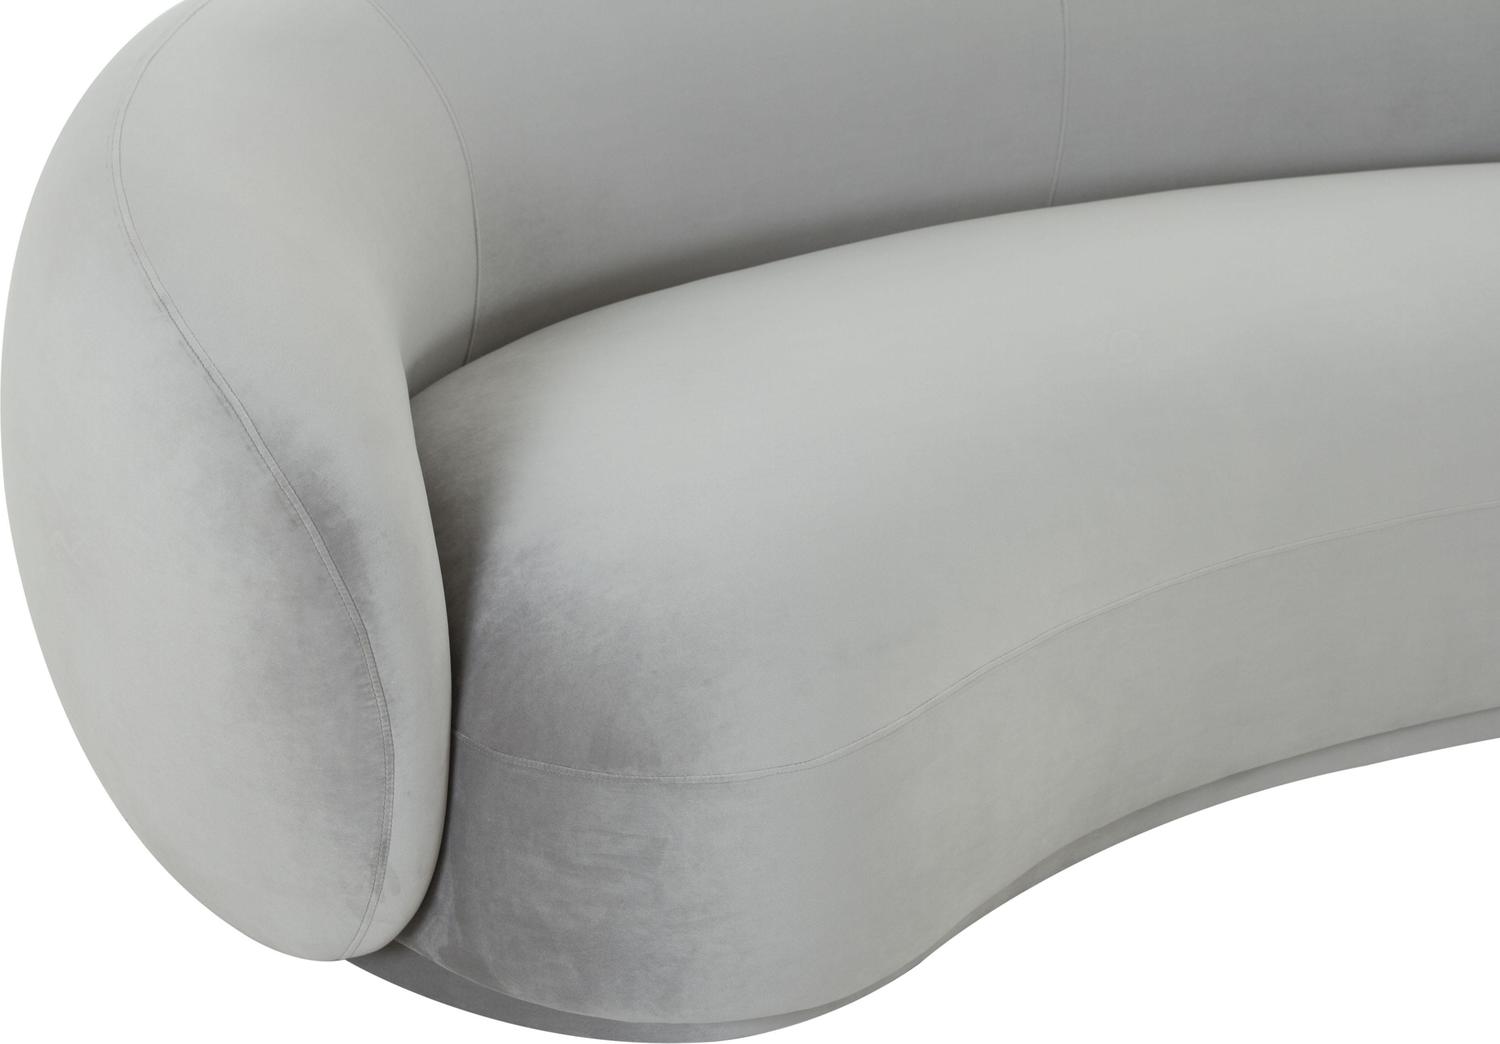 navy velvet sectional sofa Tov Furniture Sofas Light Grey